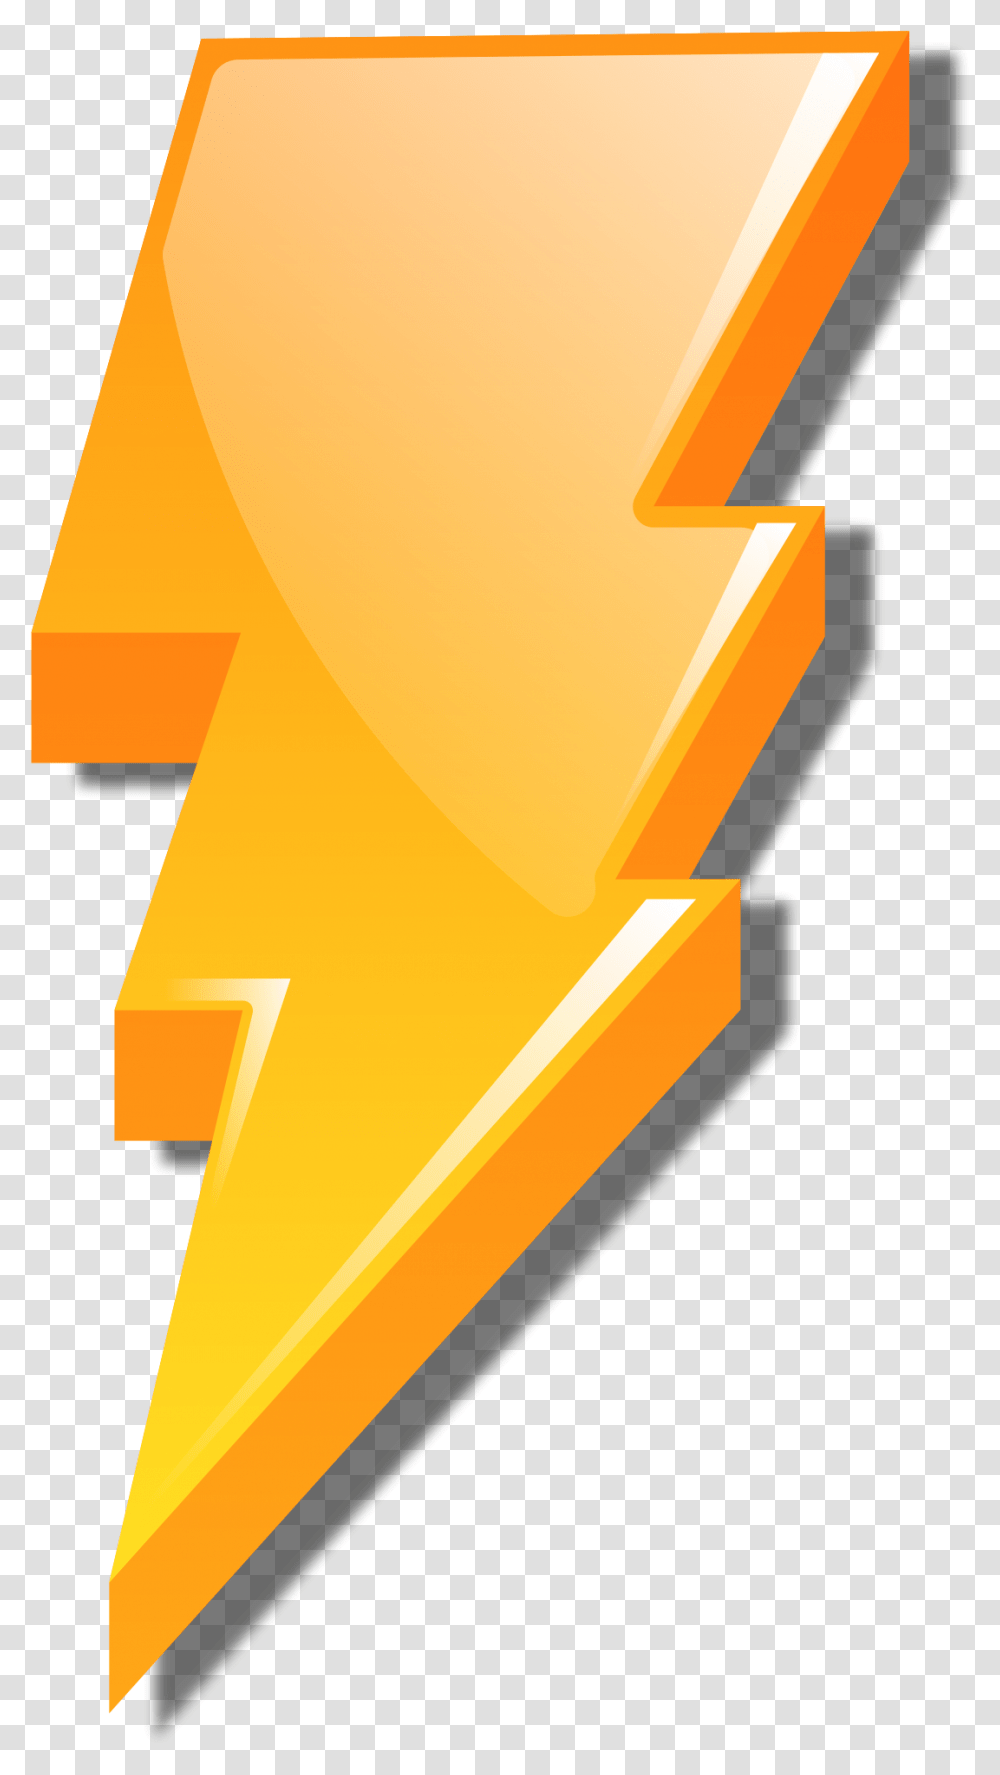 Download Hd Open Power Rangers Lightning Bolt Lightning Bolt Power Rangers Logo, Text, Symbol, Sunlight, Gold Transparent Png